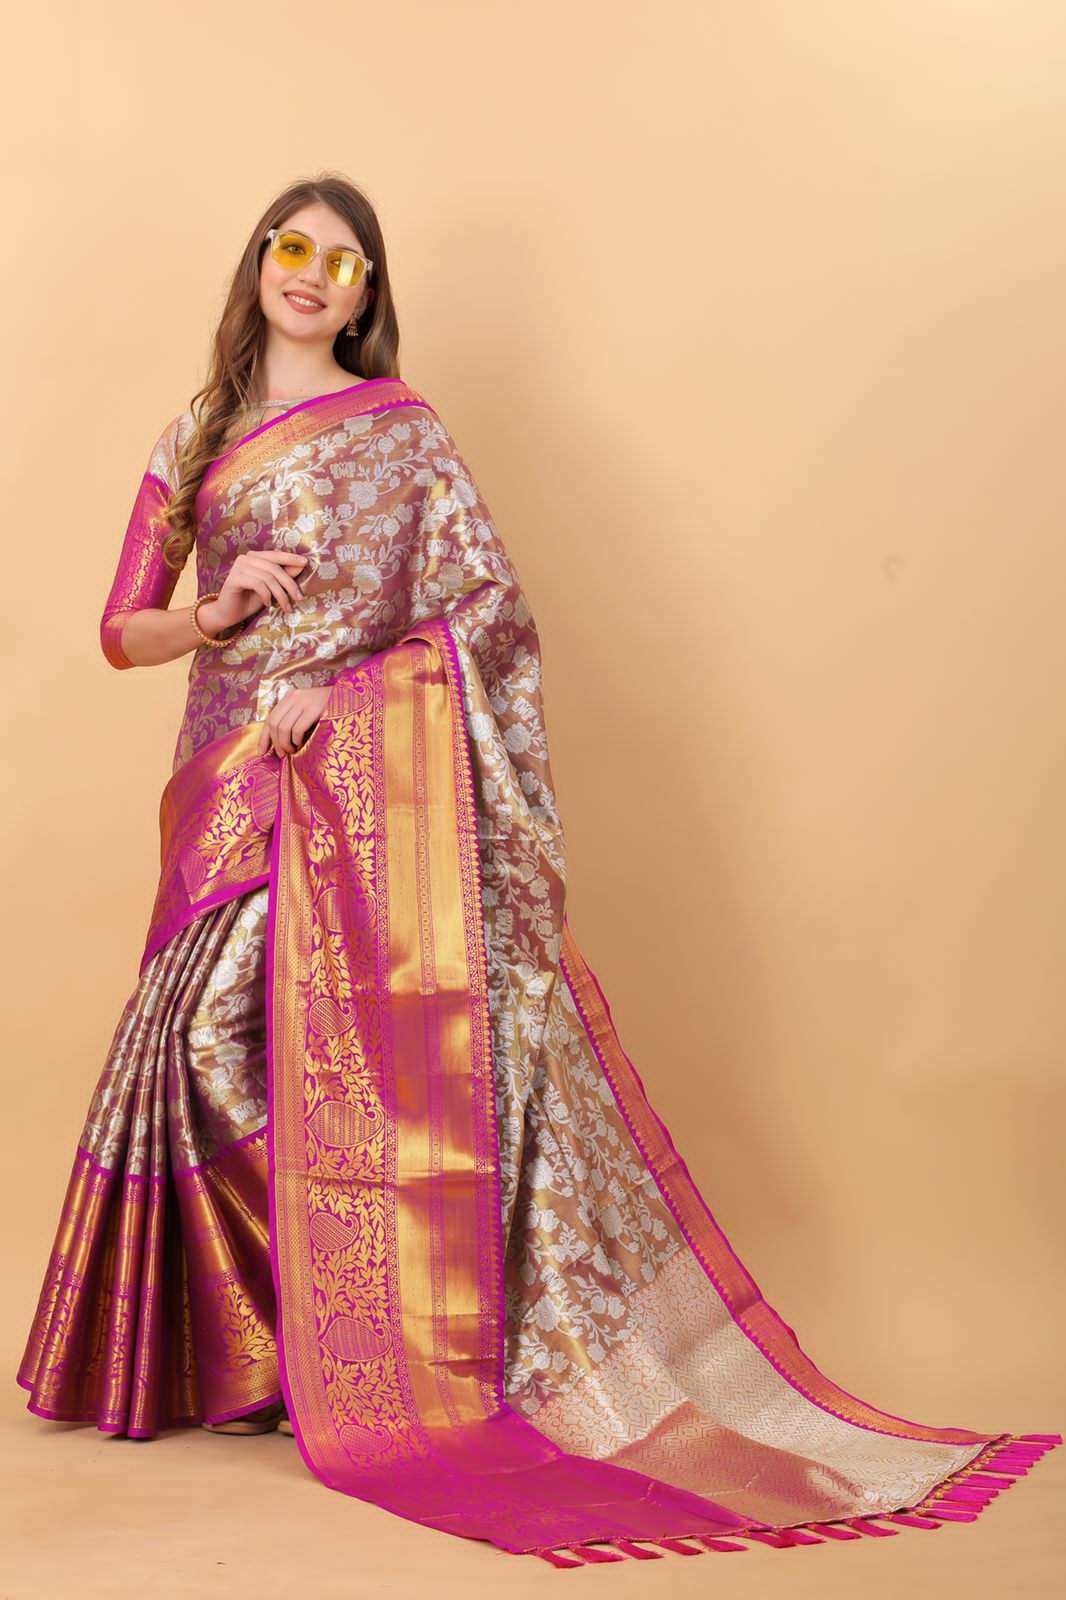 mitera saree review | silk saree for diwali | RARA | pink gold bridal saree  | banarasi saree review - YouTube